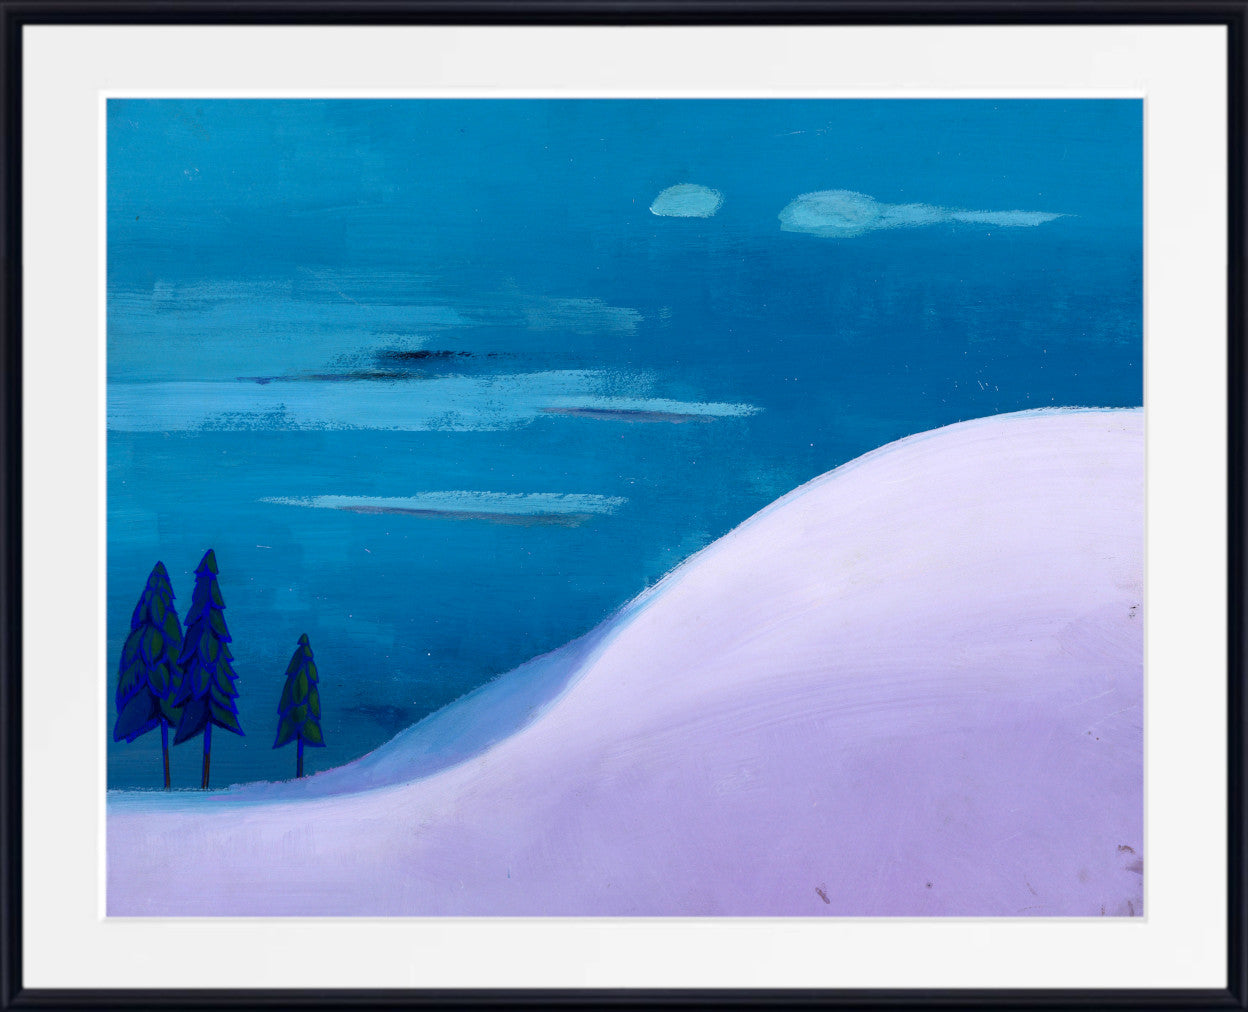 Landschaft in Blue and Lilac, Karl Wiener Print